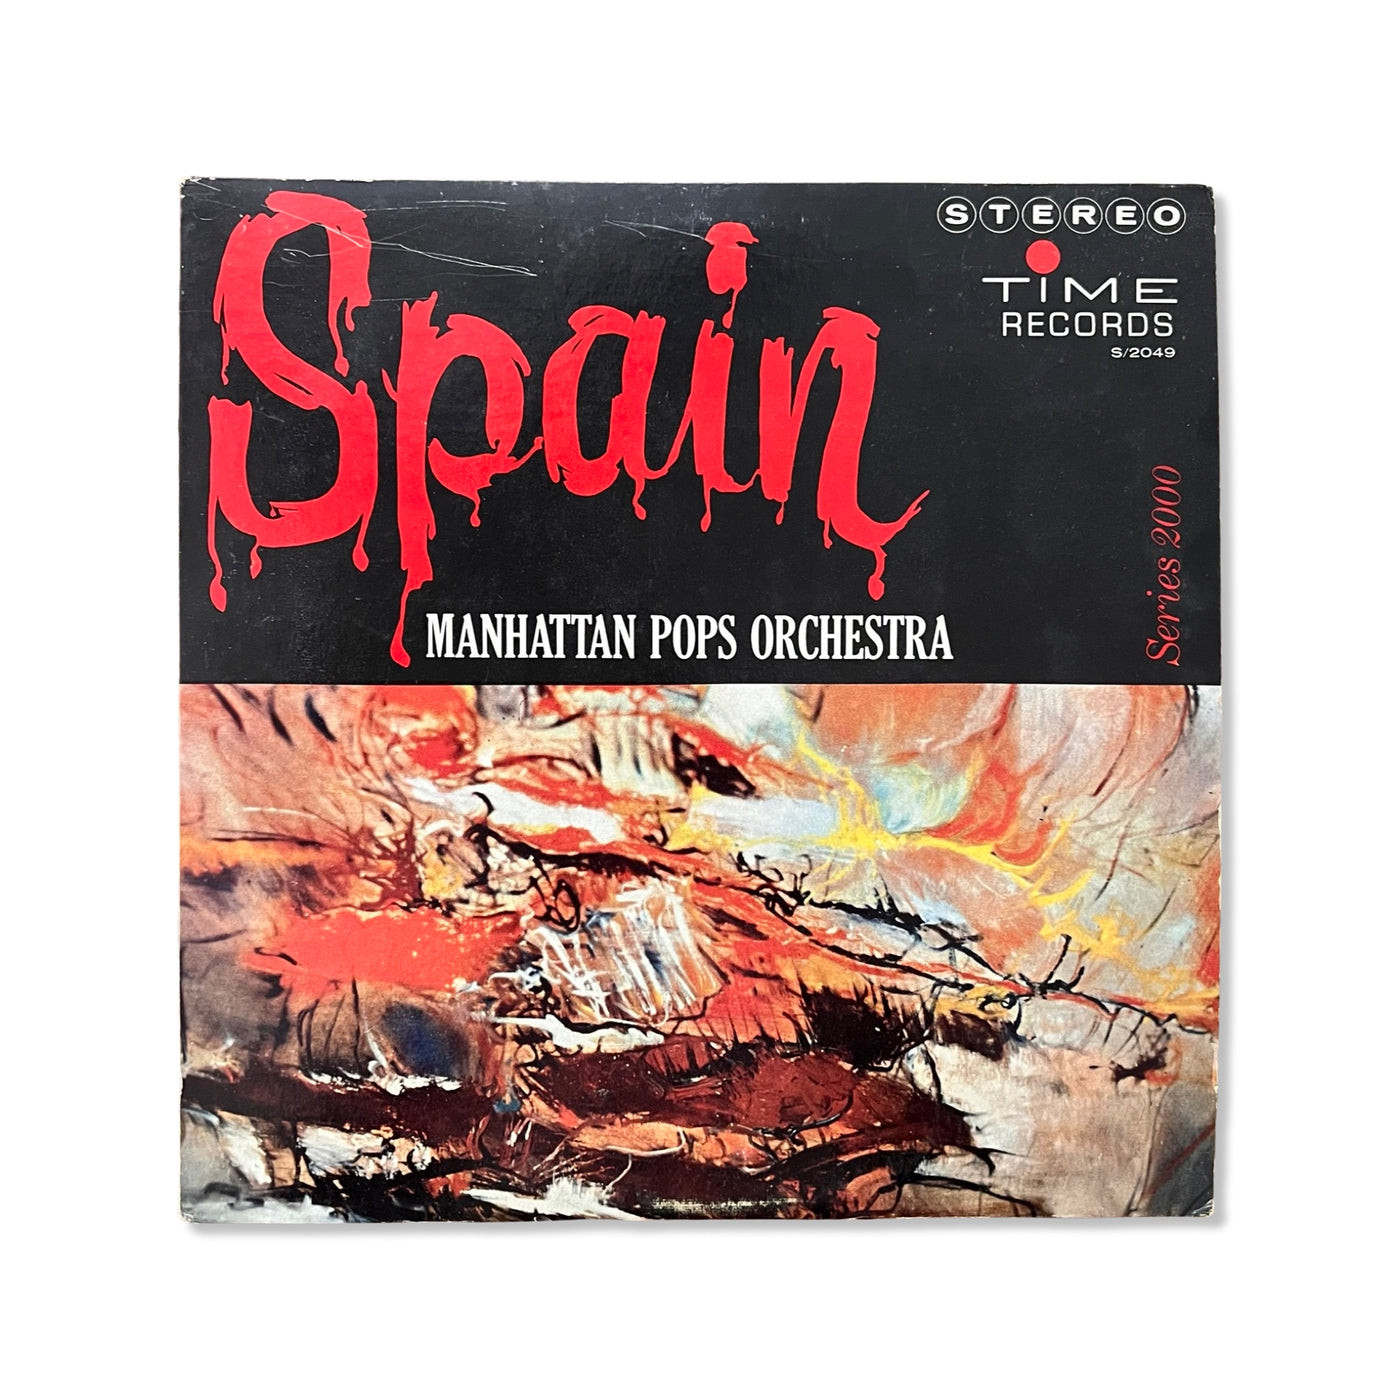 Manhattan Pops Orchestra – Spain